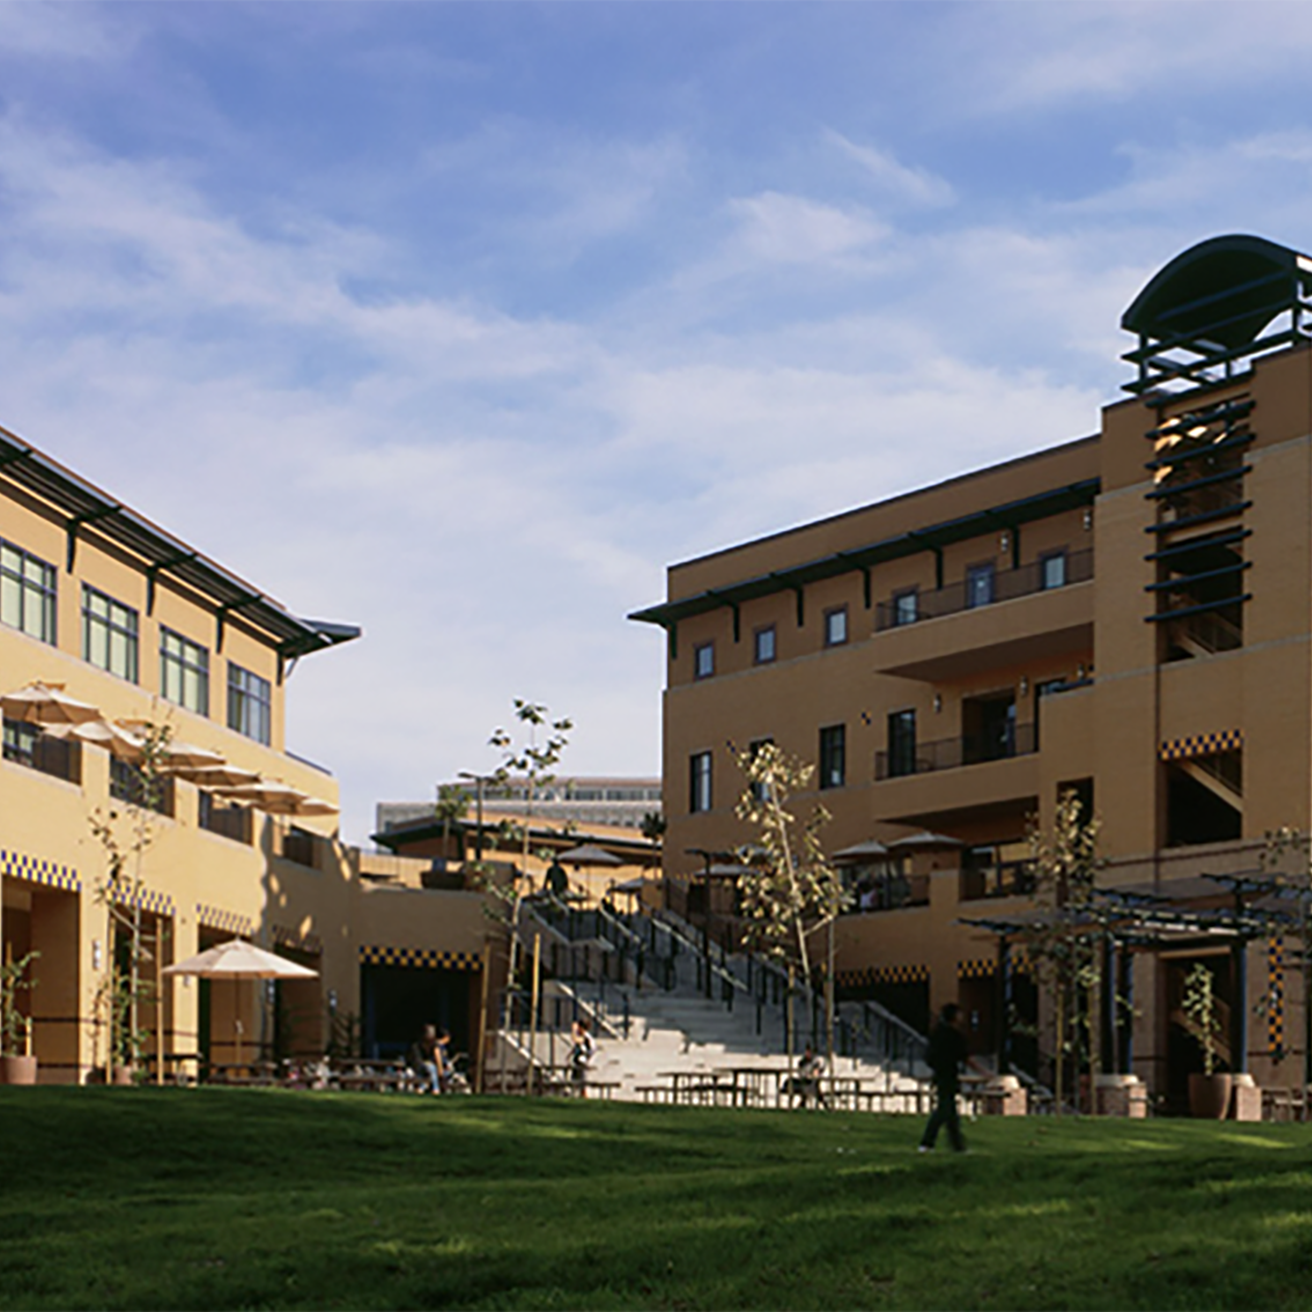 University of California, Irvine campus